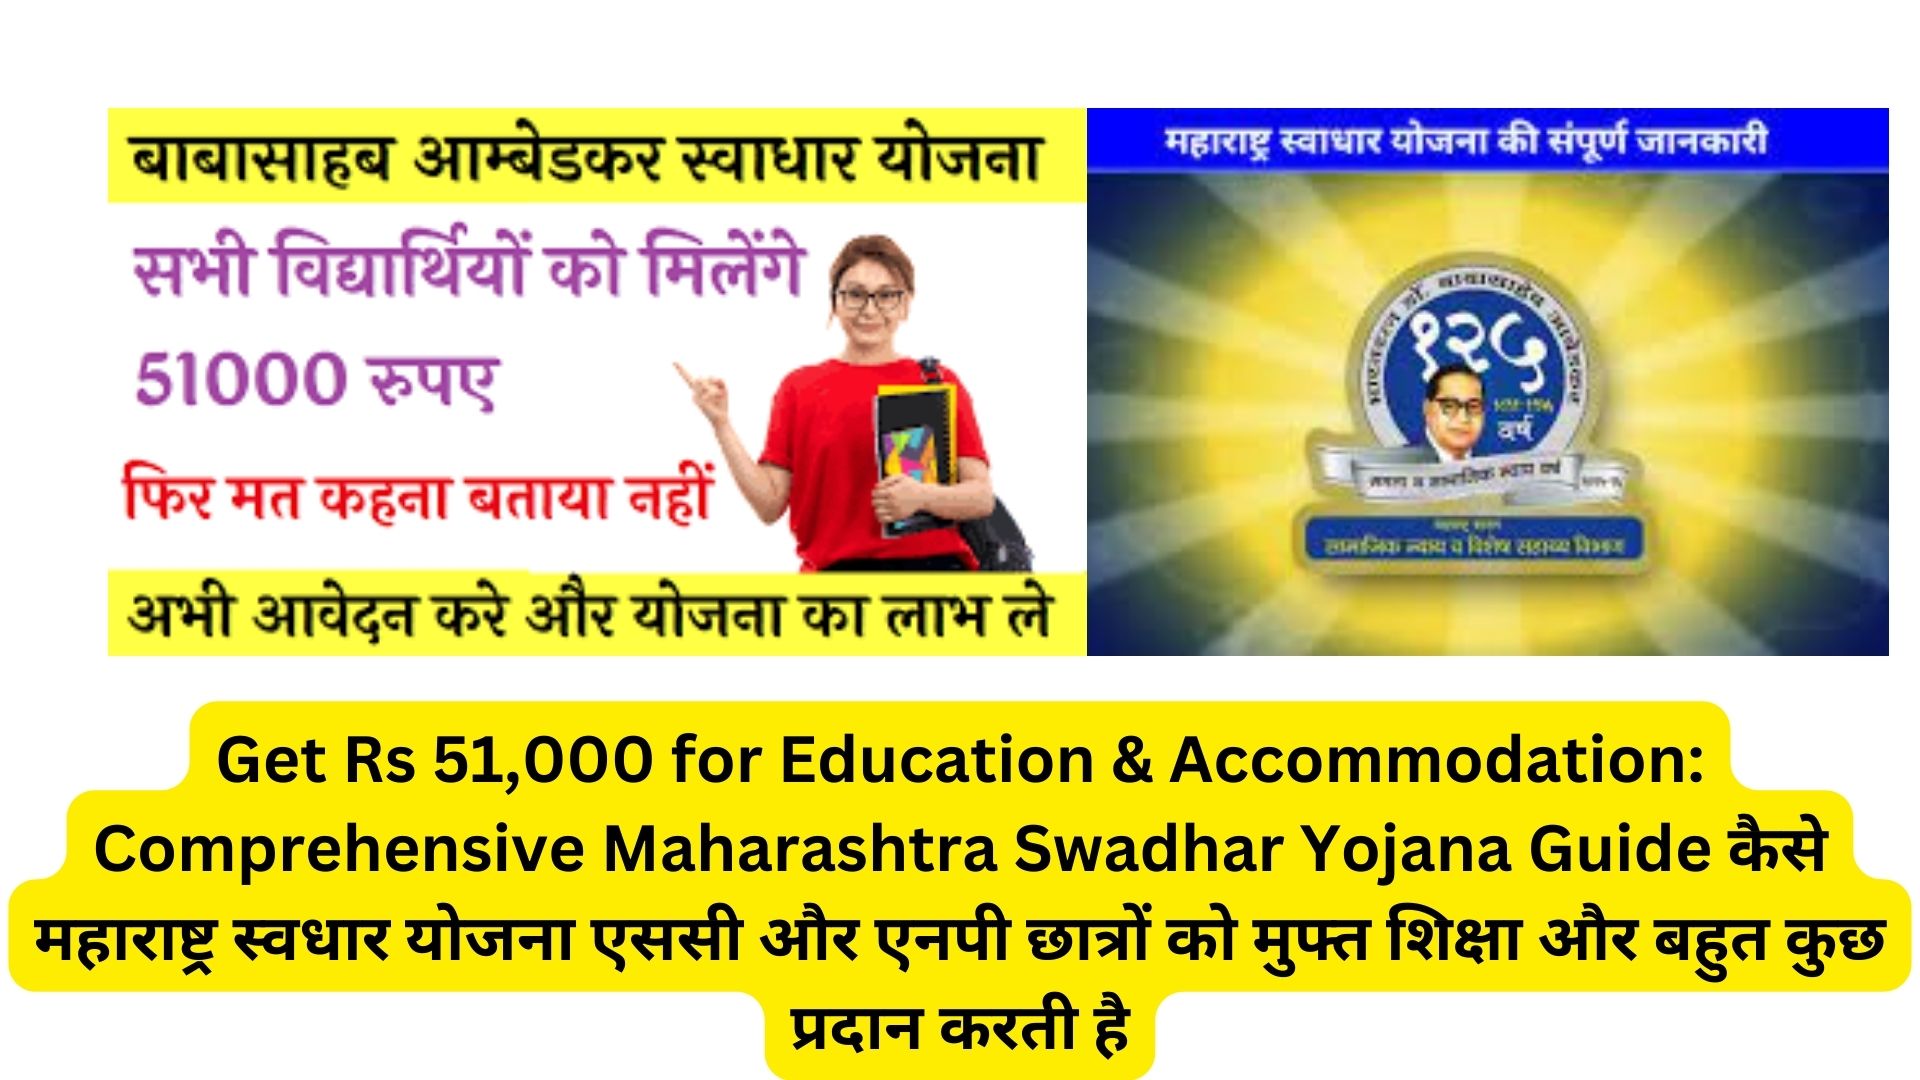 Get Rs 51,000 for Education & Accommodation: Comprehensive Maharashtra Swadhar Yojana Guide कैसे महाराष्ट्र स्वधार योजना एससी और एनपी छात्रों को मुफ्त शिक्षा और बहुत कुछ प्रदान करती है